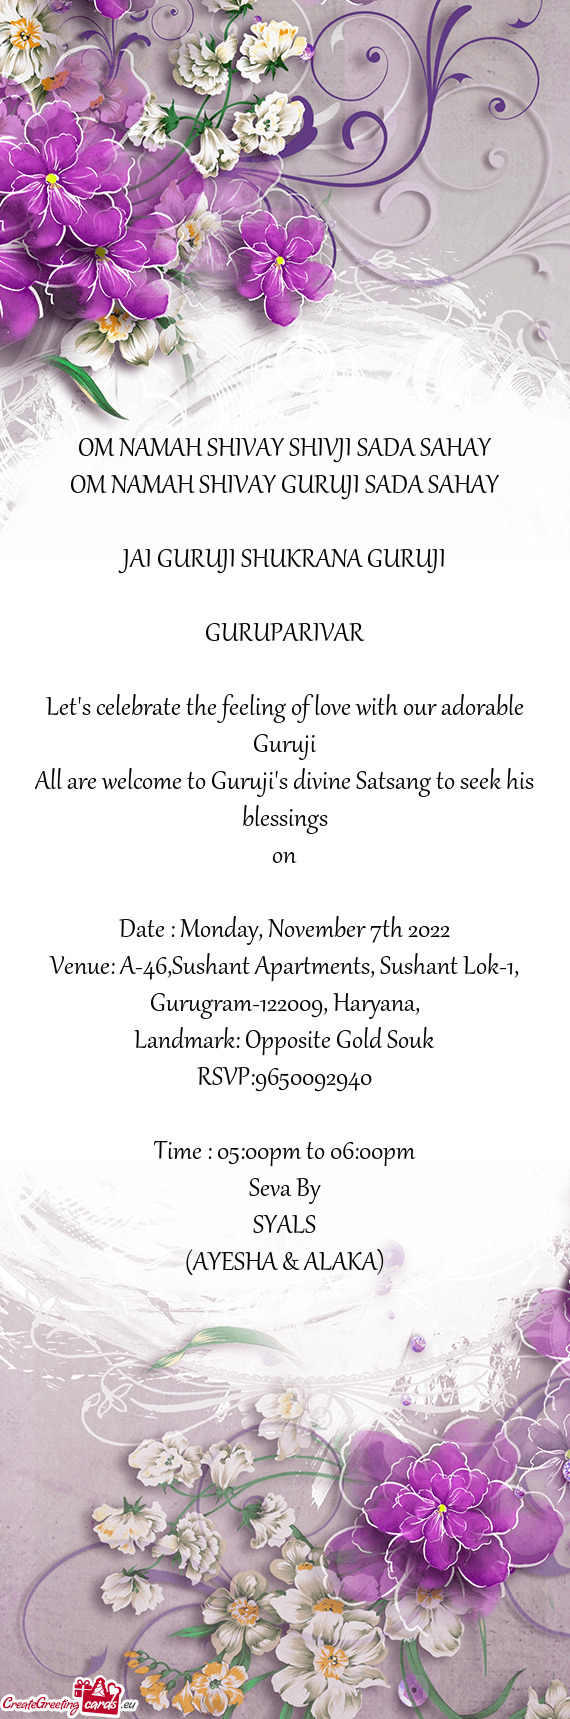 All are welcome to Guruji